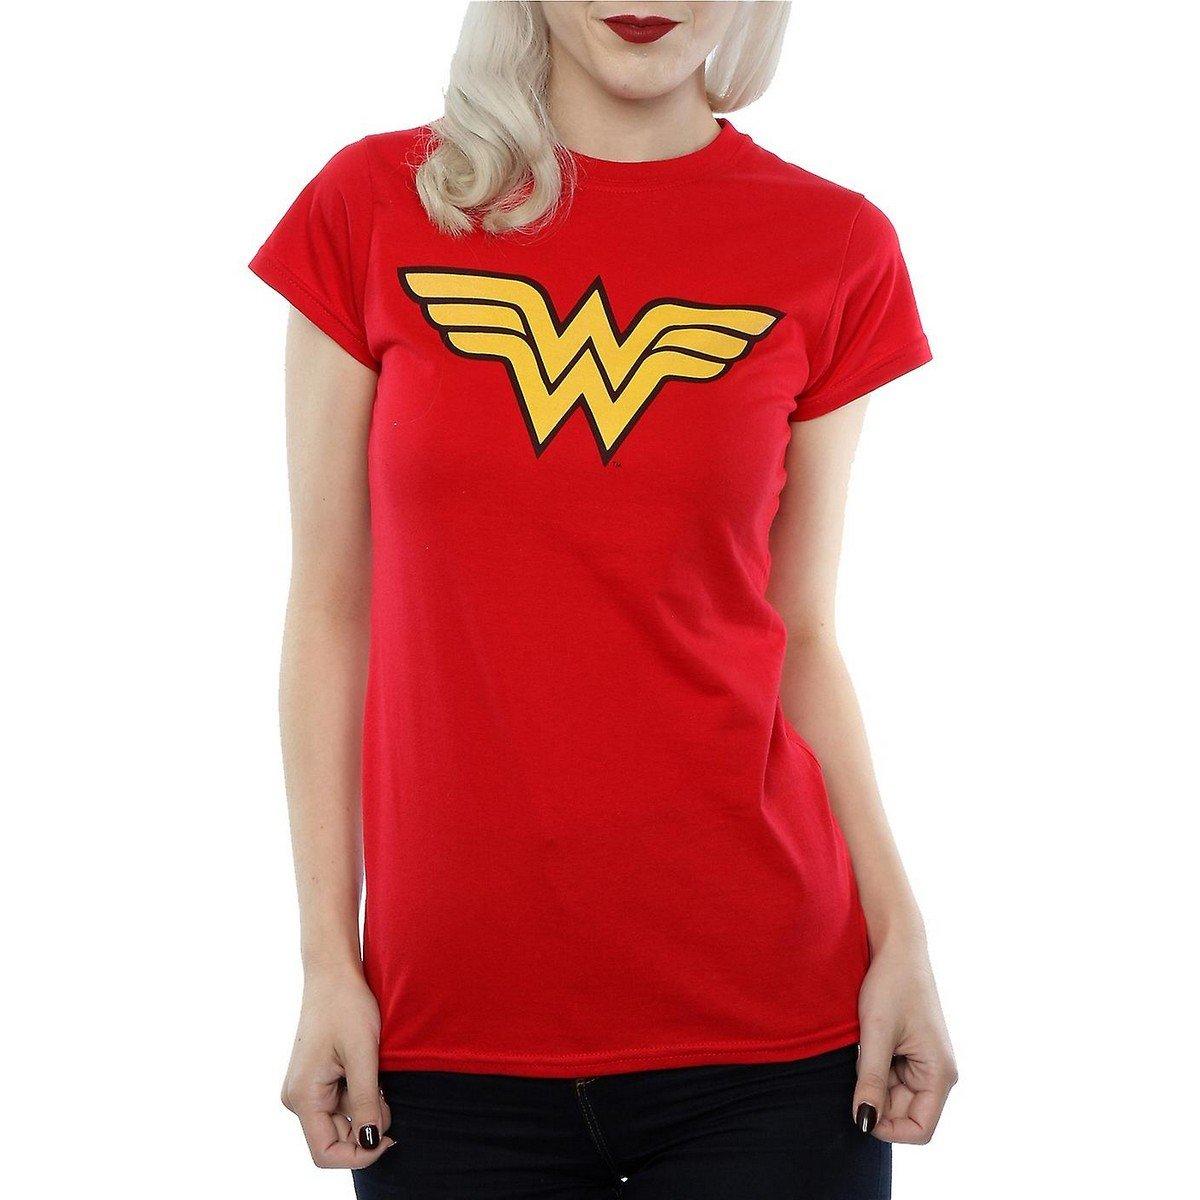 Tshirt Damen Rot Bunt XXL von Wonder Woman